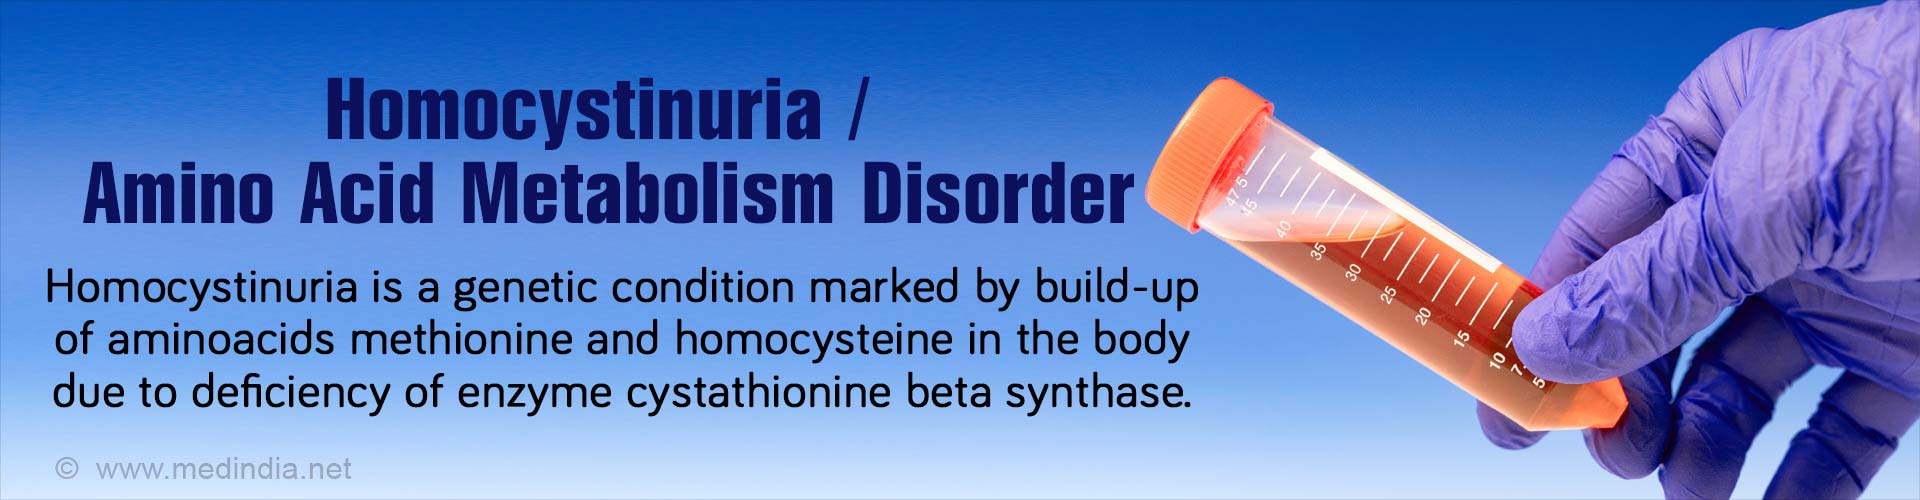 Homocystinuria / Amino Acid Metabolism Disorder